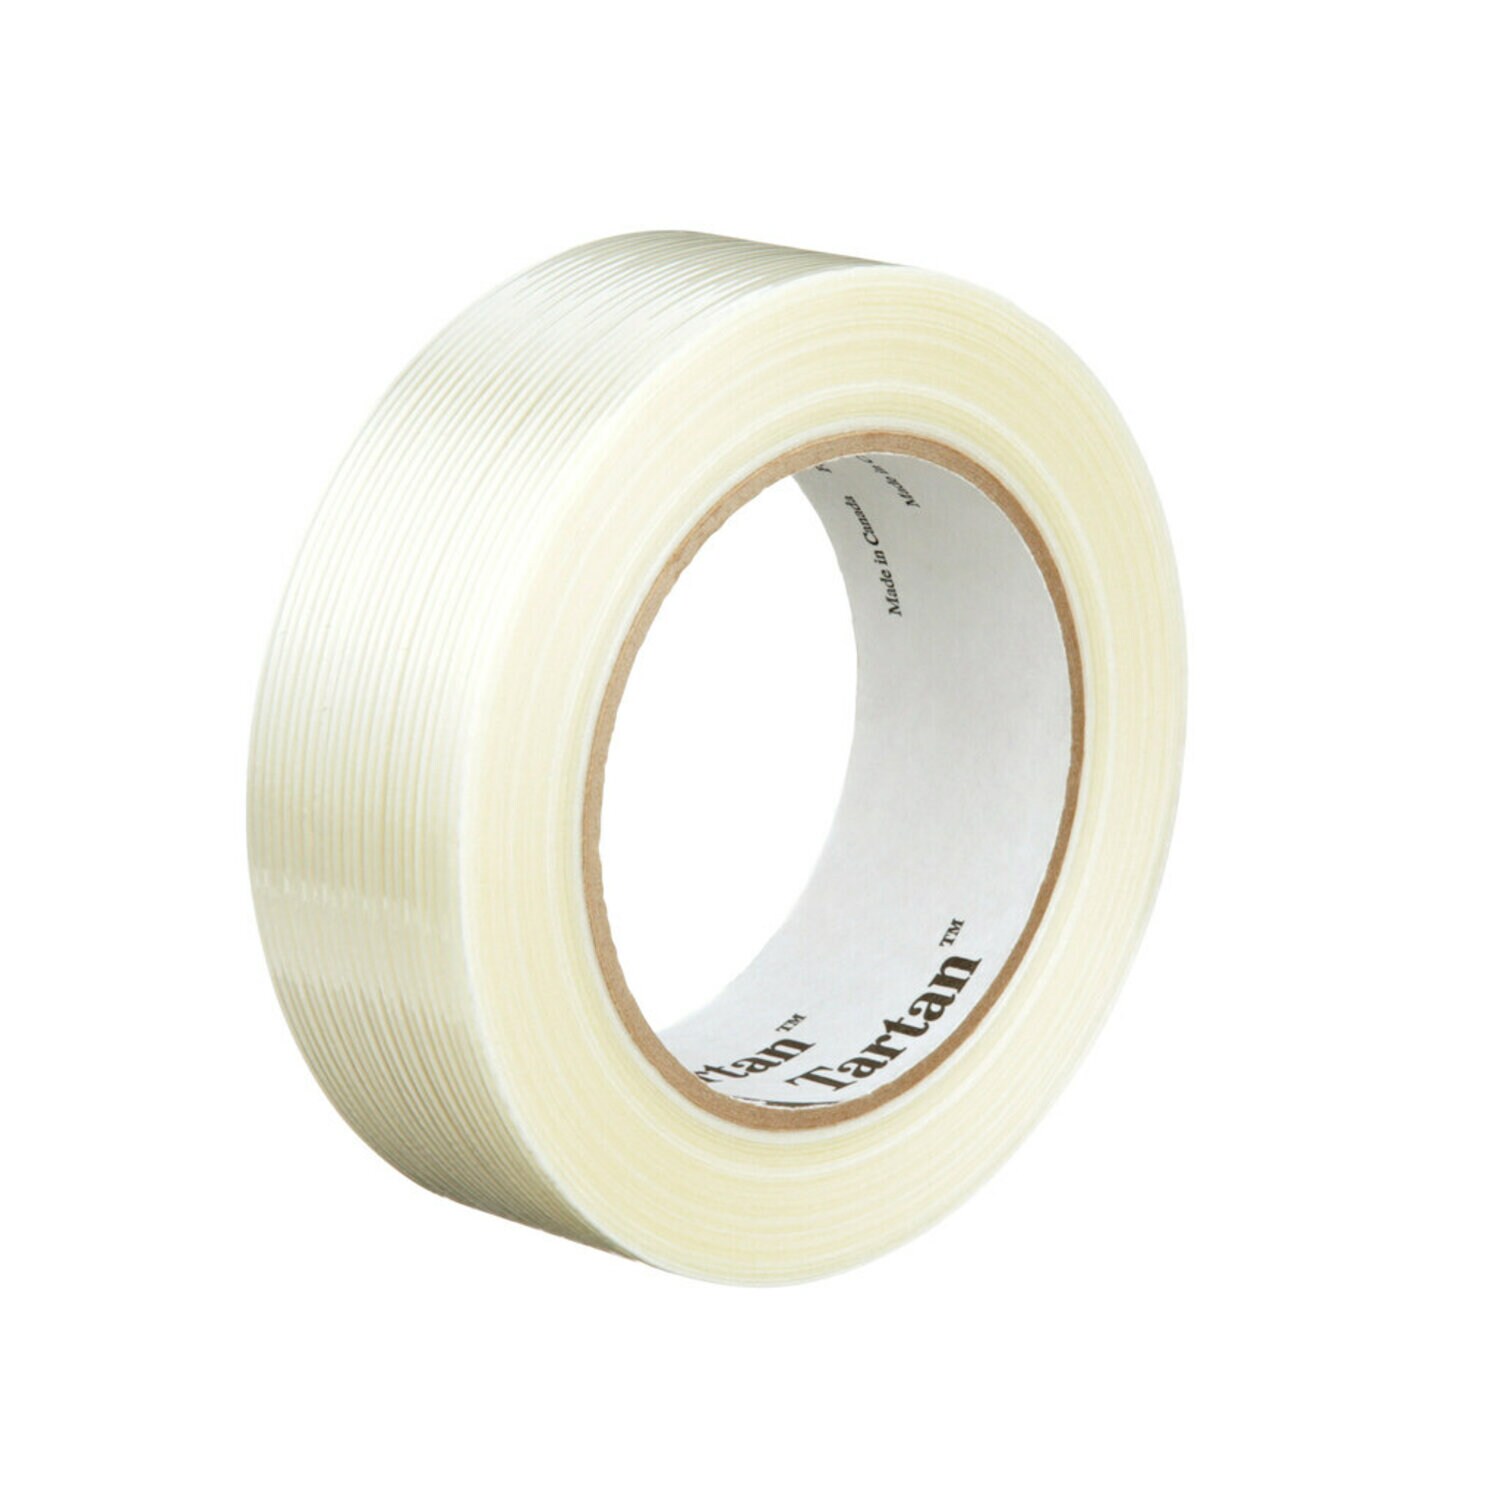 7000126227 - Tartan Filament Tape 8934, Clear, 36 mm x 55 m, 4 mil, 24 rolls per
case